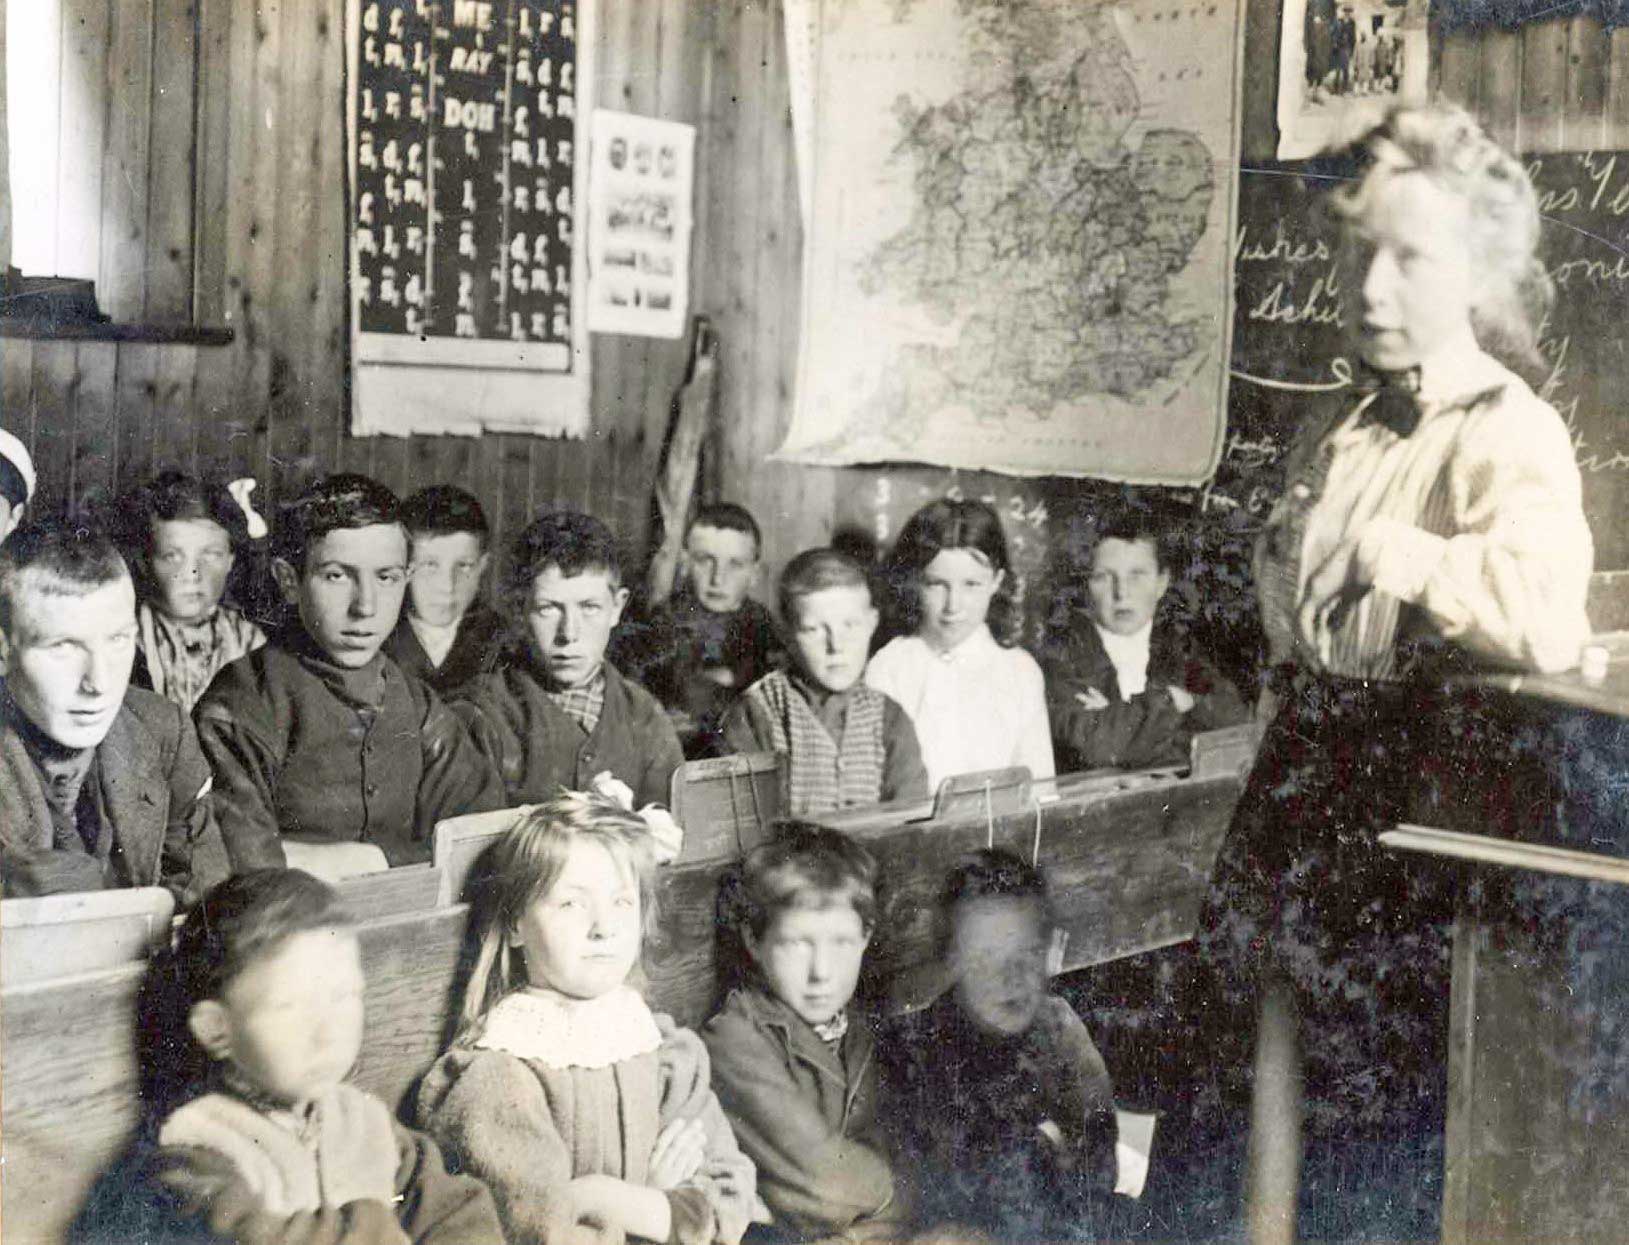 les écoliers de St-Kilda en 1927